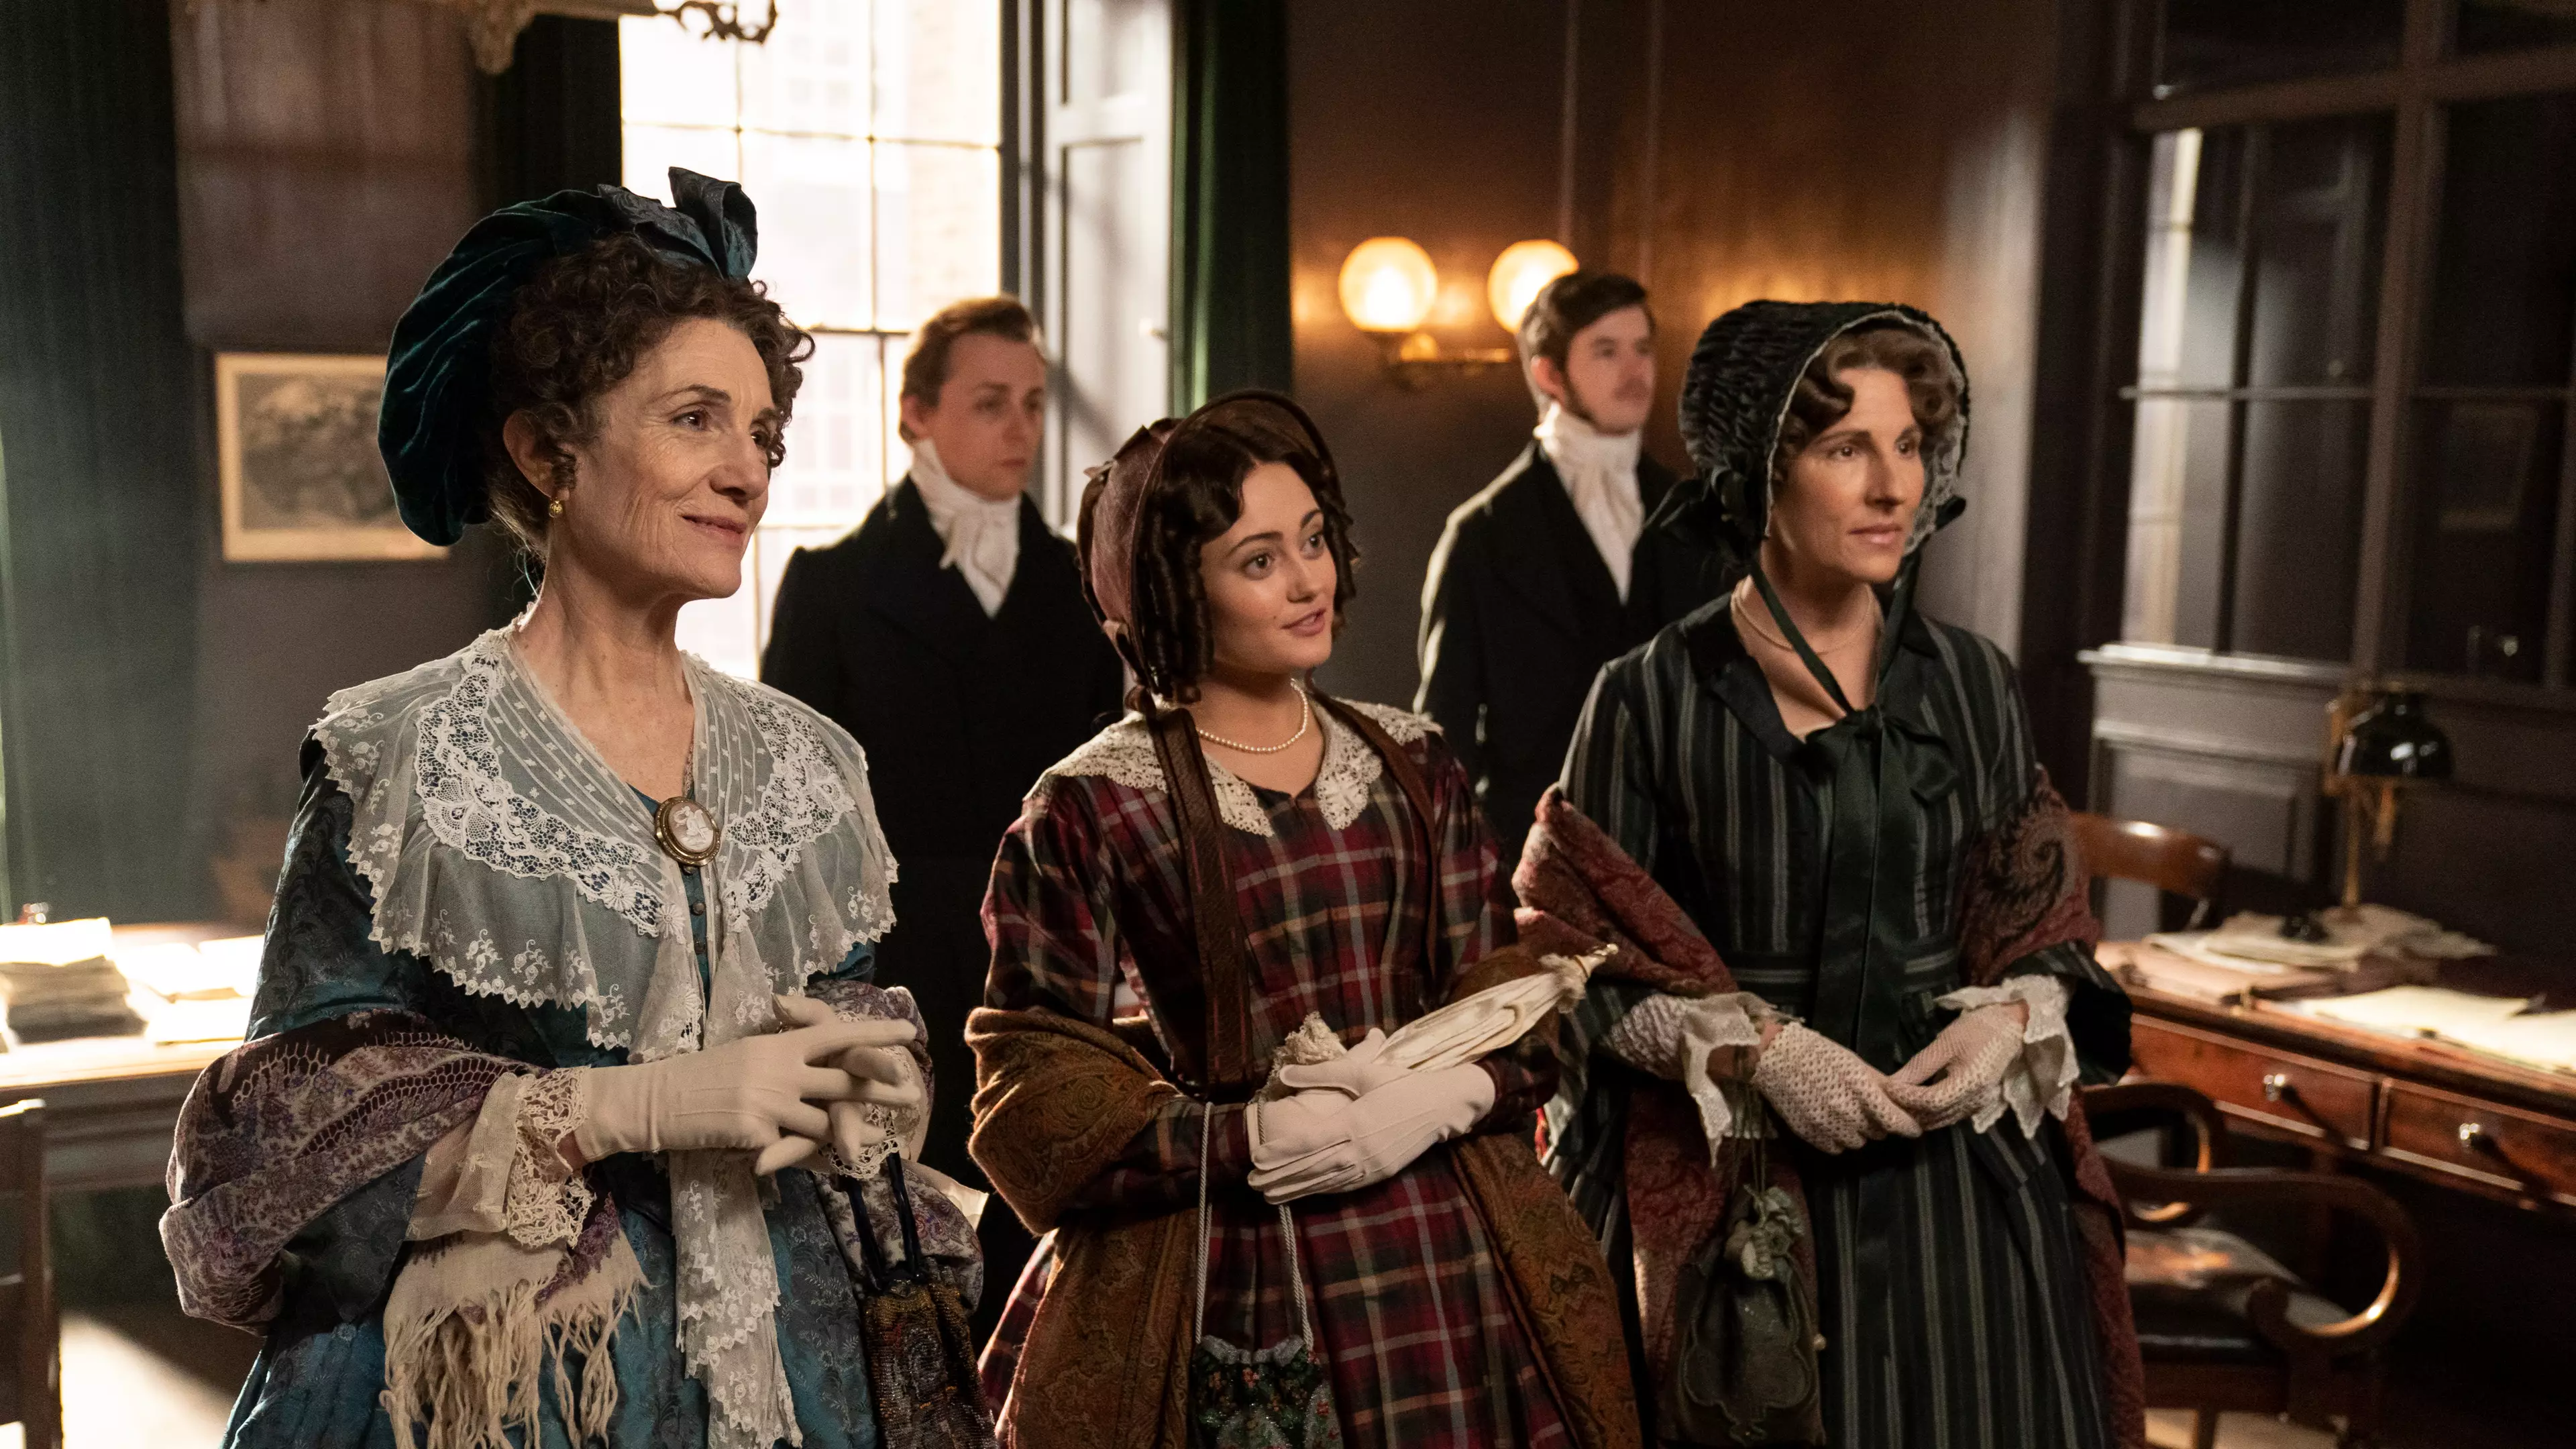 'Downton Abbey' Fans Will Love ITV's New Period Drama